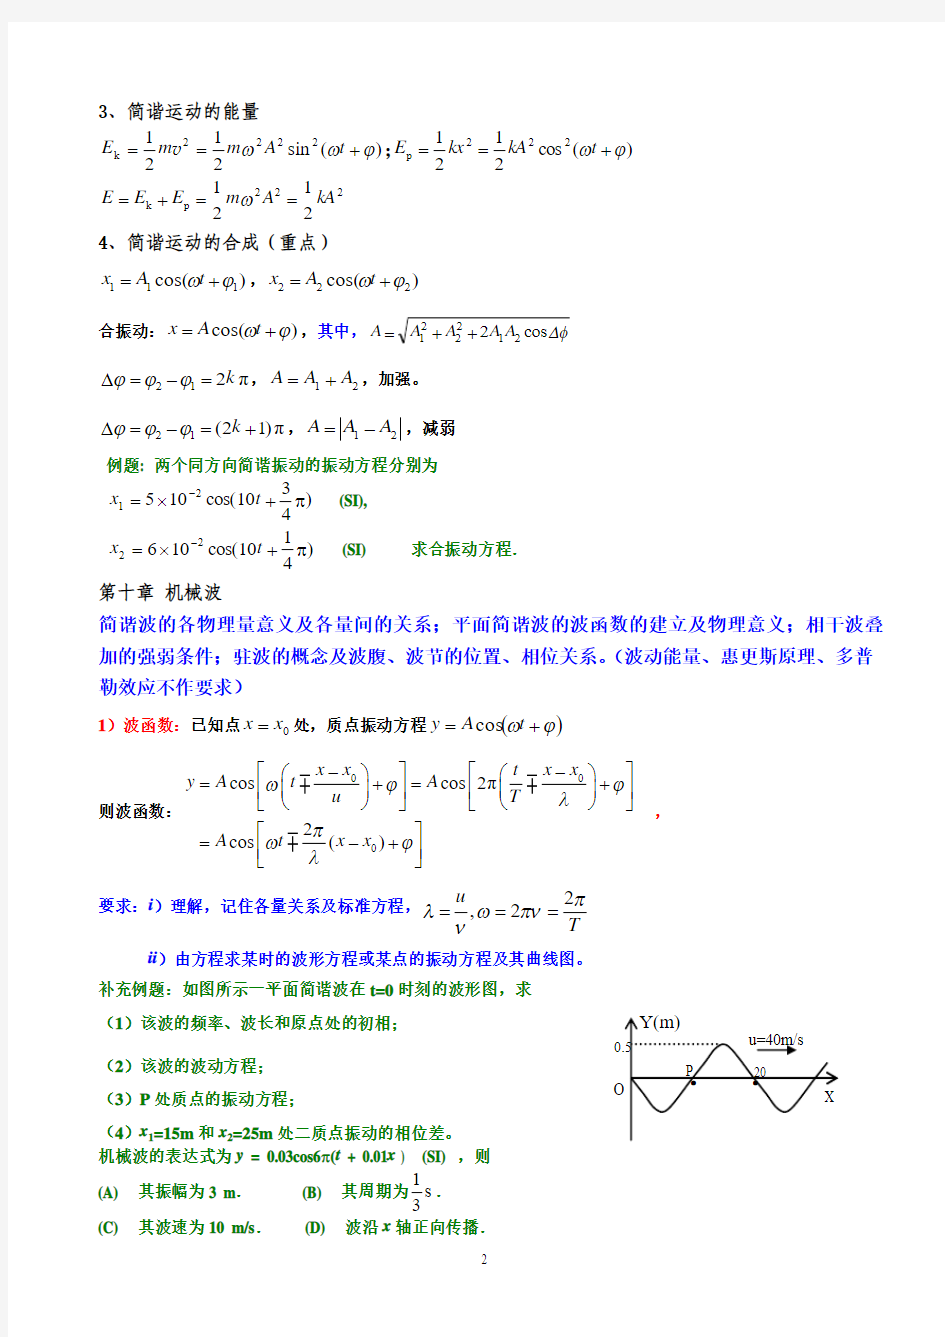 lxh2014-2015(1)大学物理Ⅱ(下)期末考试复习